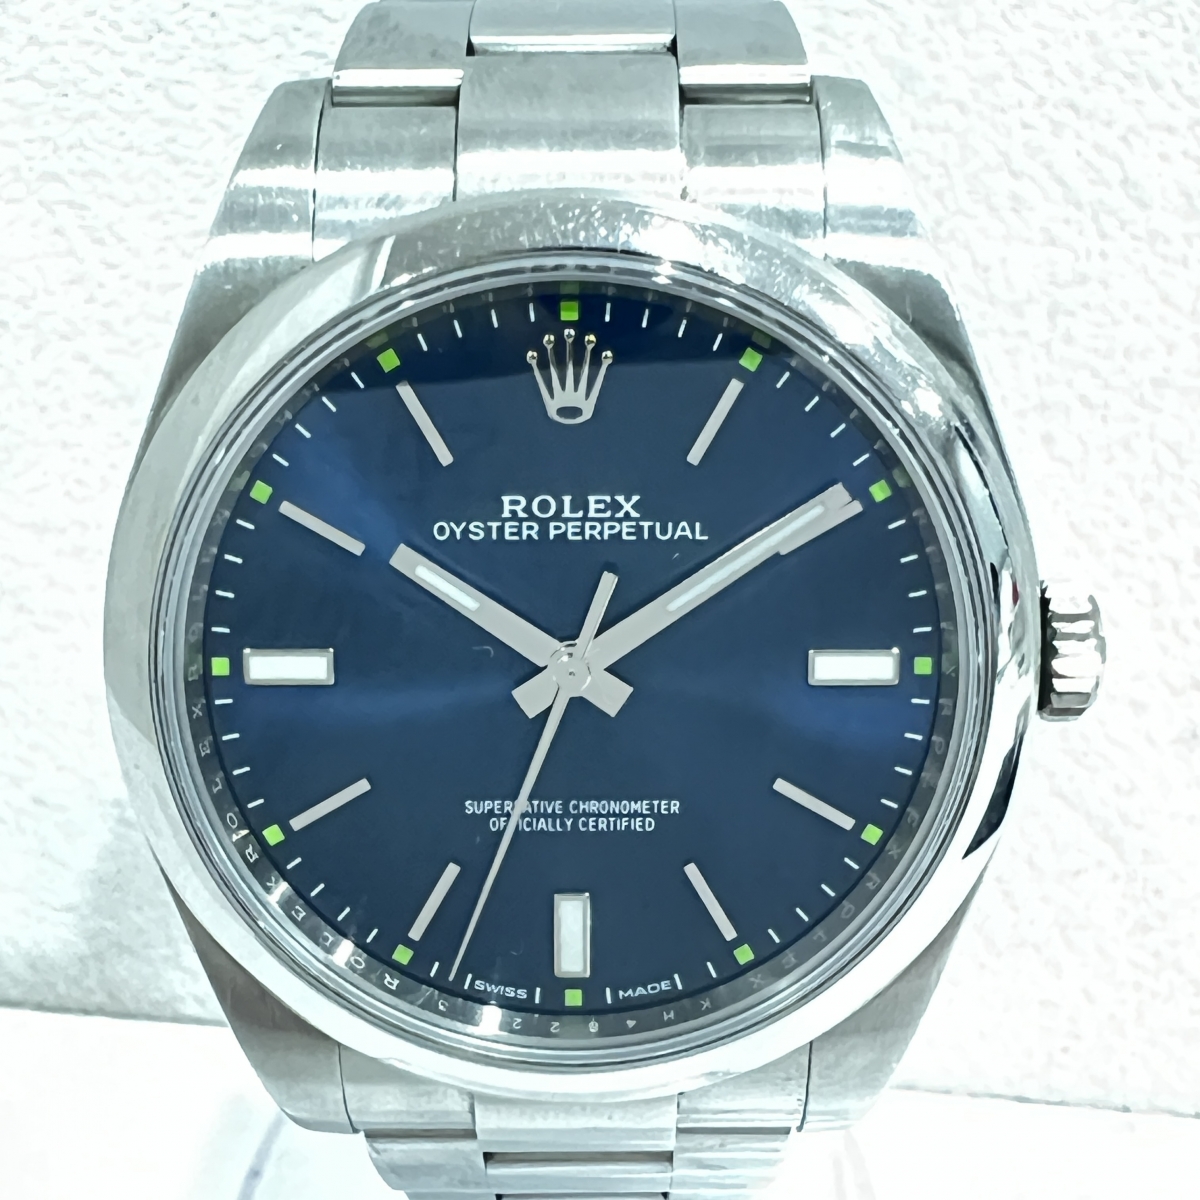 ロレックスの114300 オイスターパーペチュアル ネイビー文字盤 自動巻き腕時計の買取実績です。